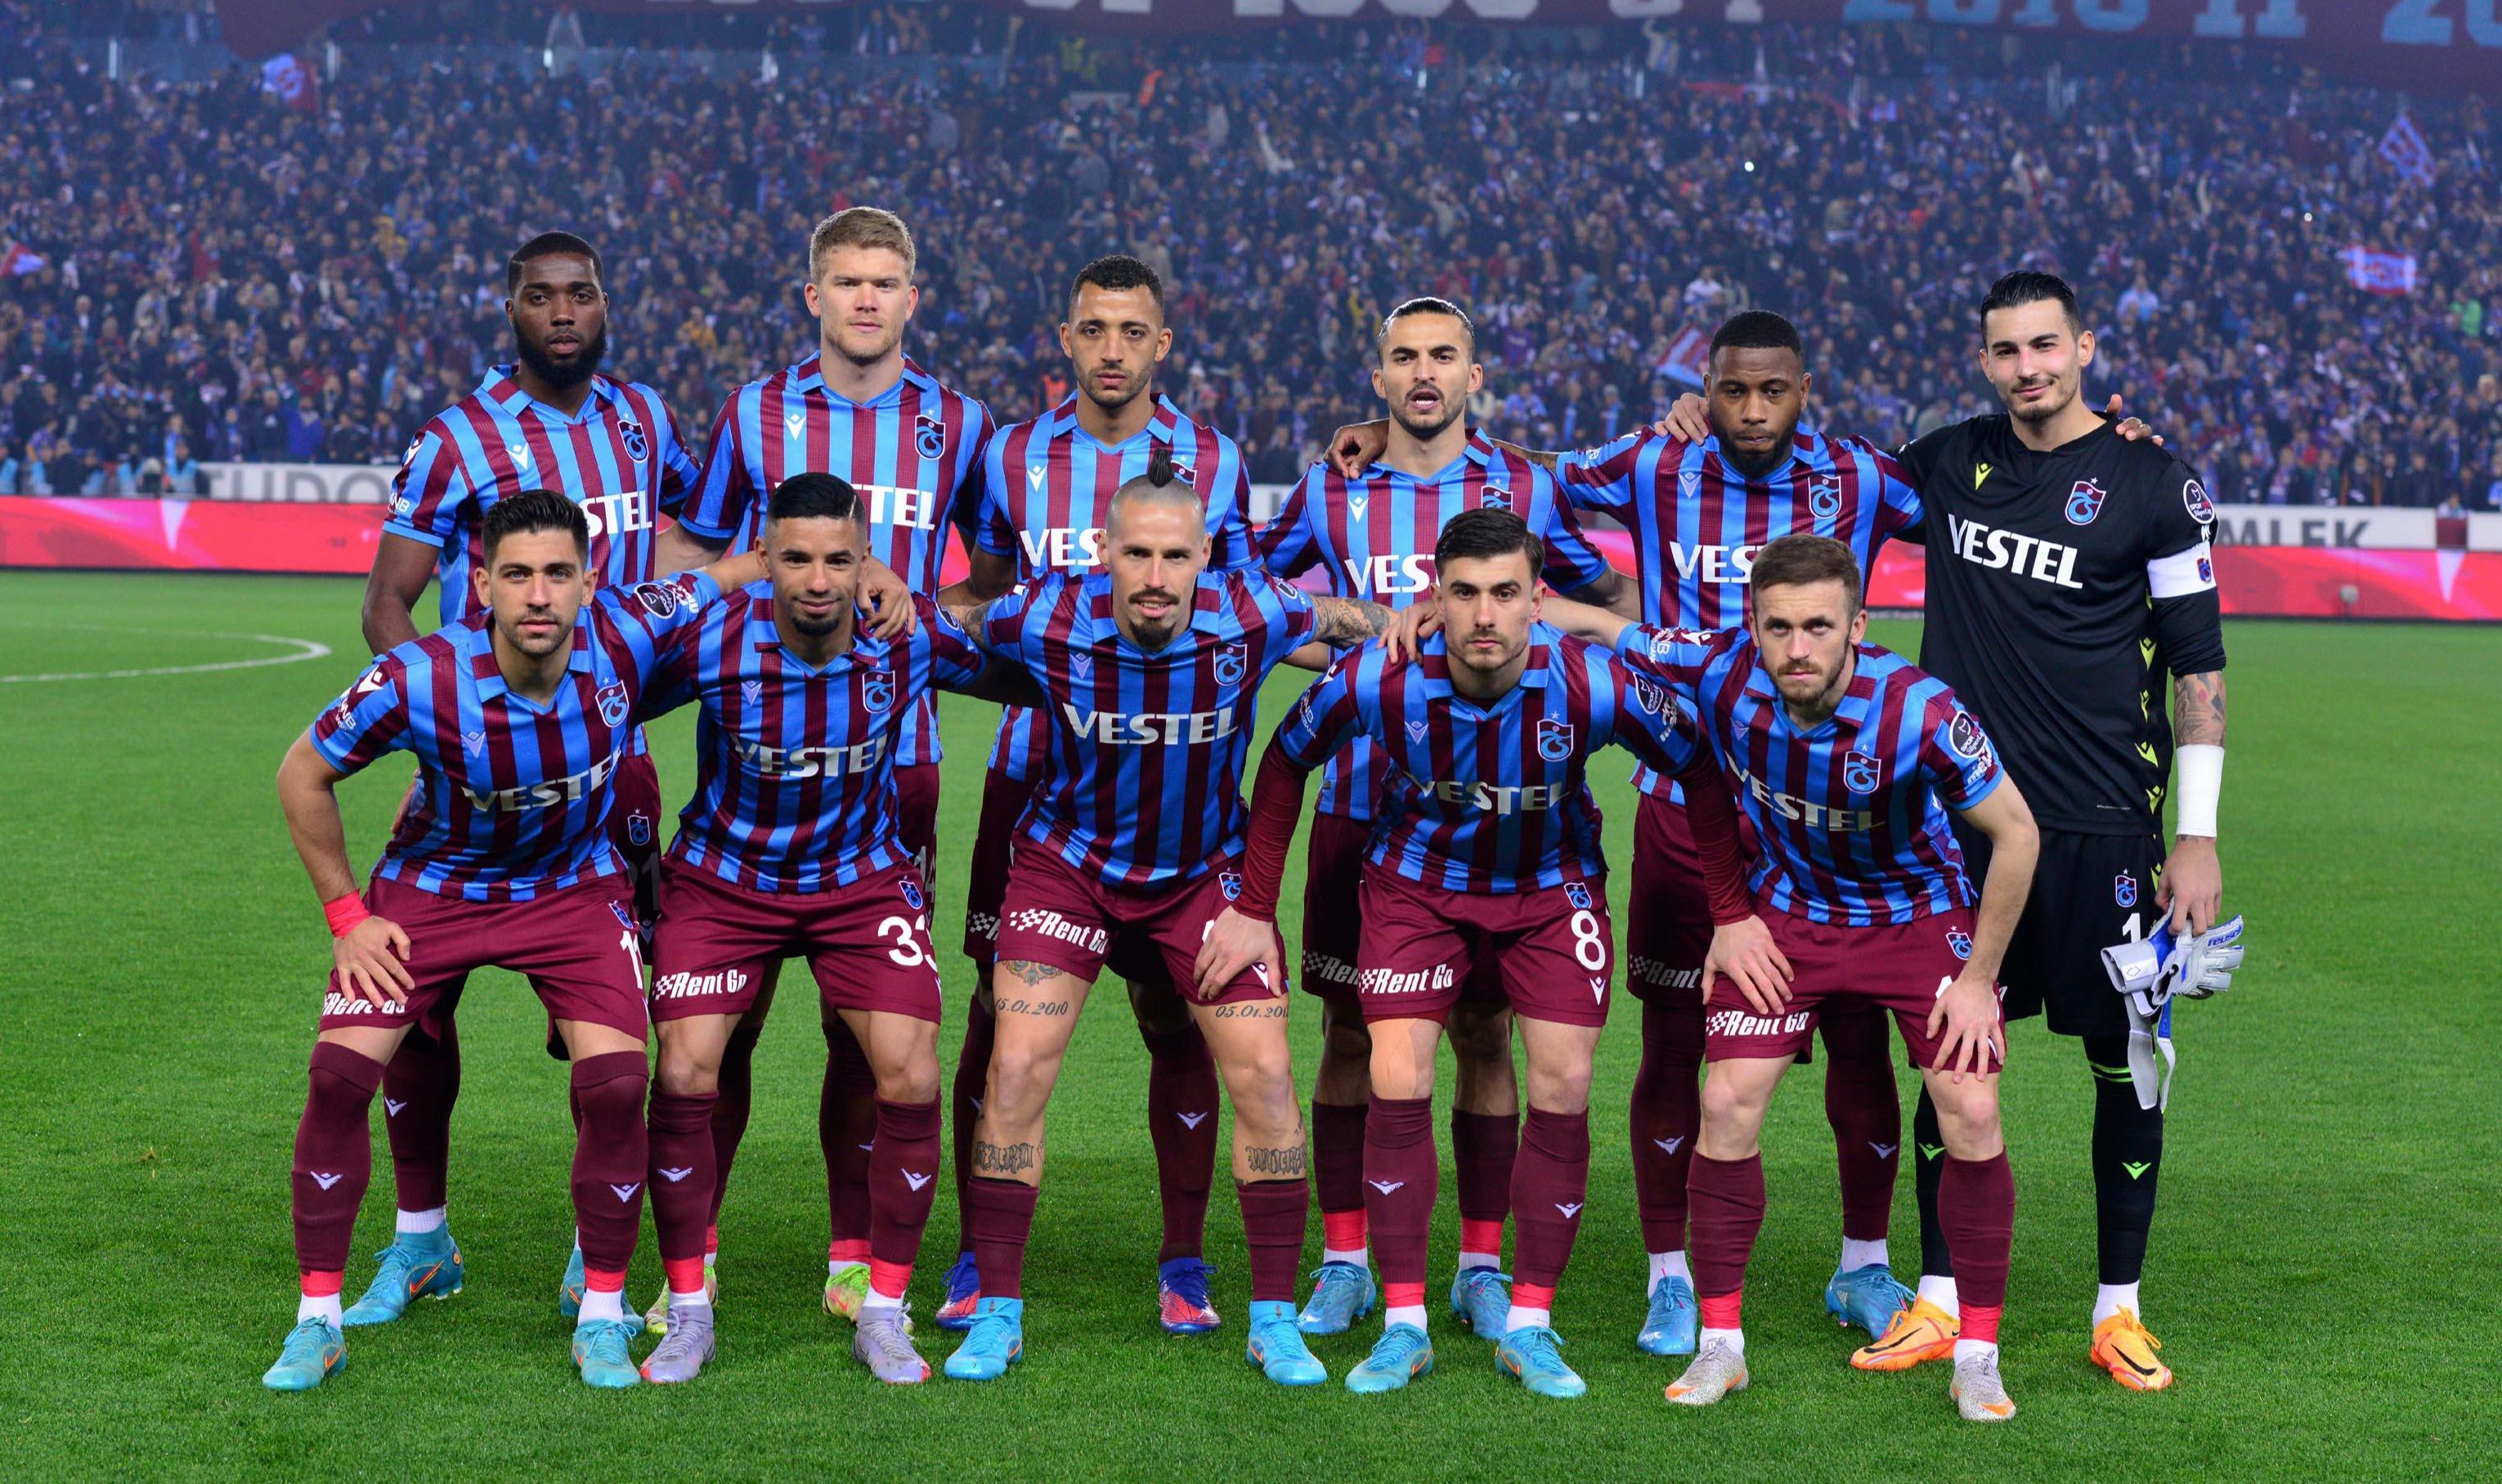 Trabzonsporda parola belli: 5 günde çifte zafer